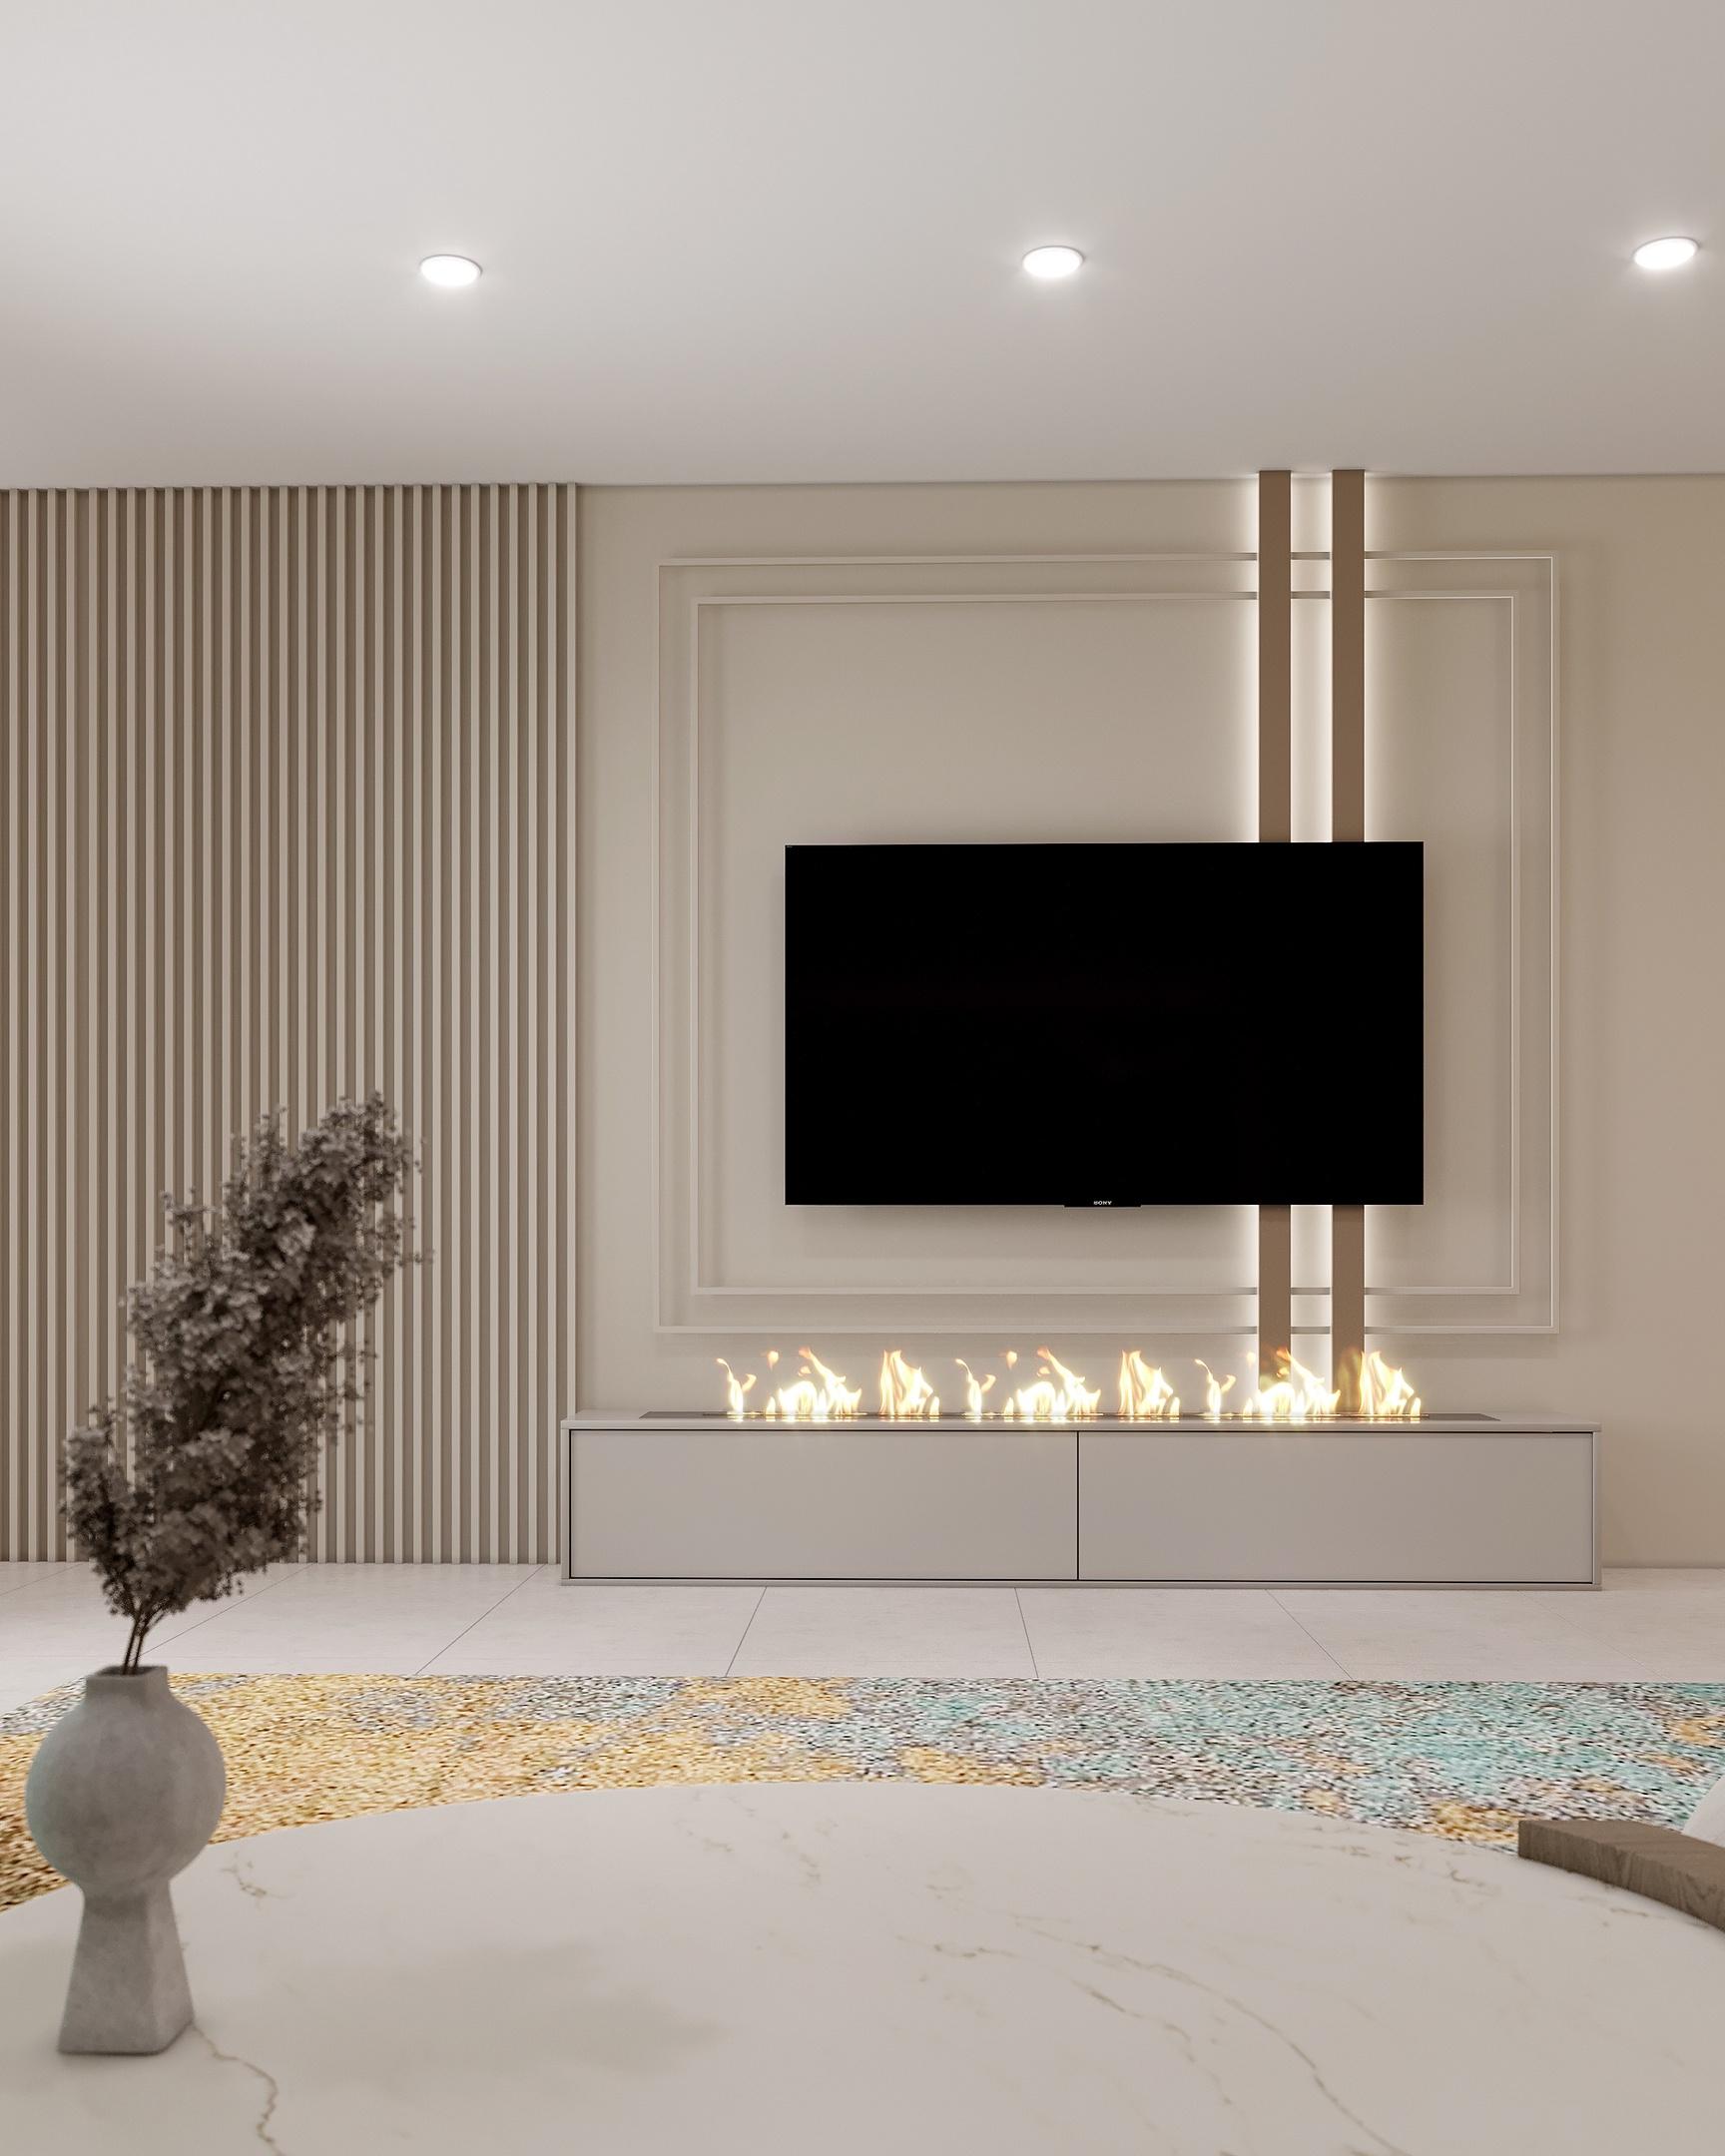 Интерьер гостиной cветовыми линиями, керамогранитом на стену с телевизором, подсветкой настенной и подсветкой светодиодной